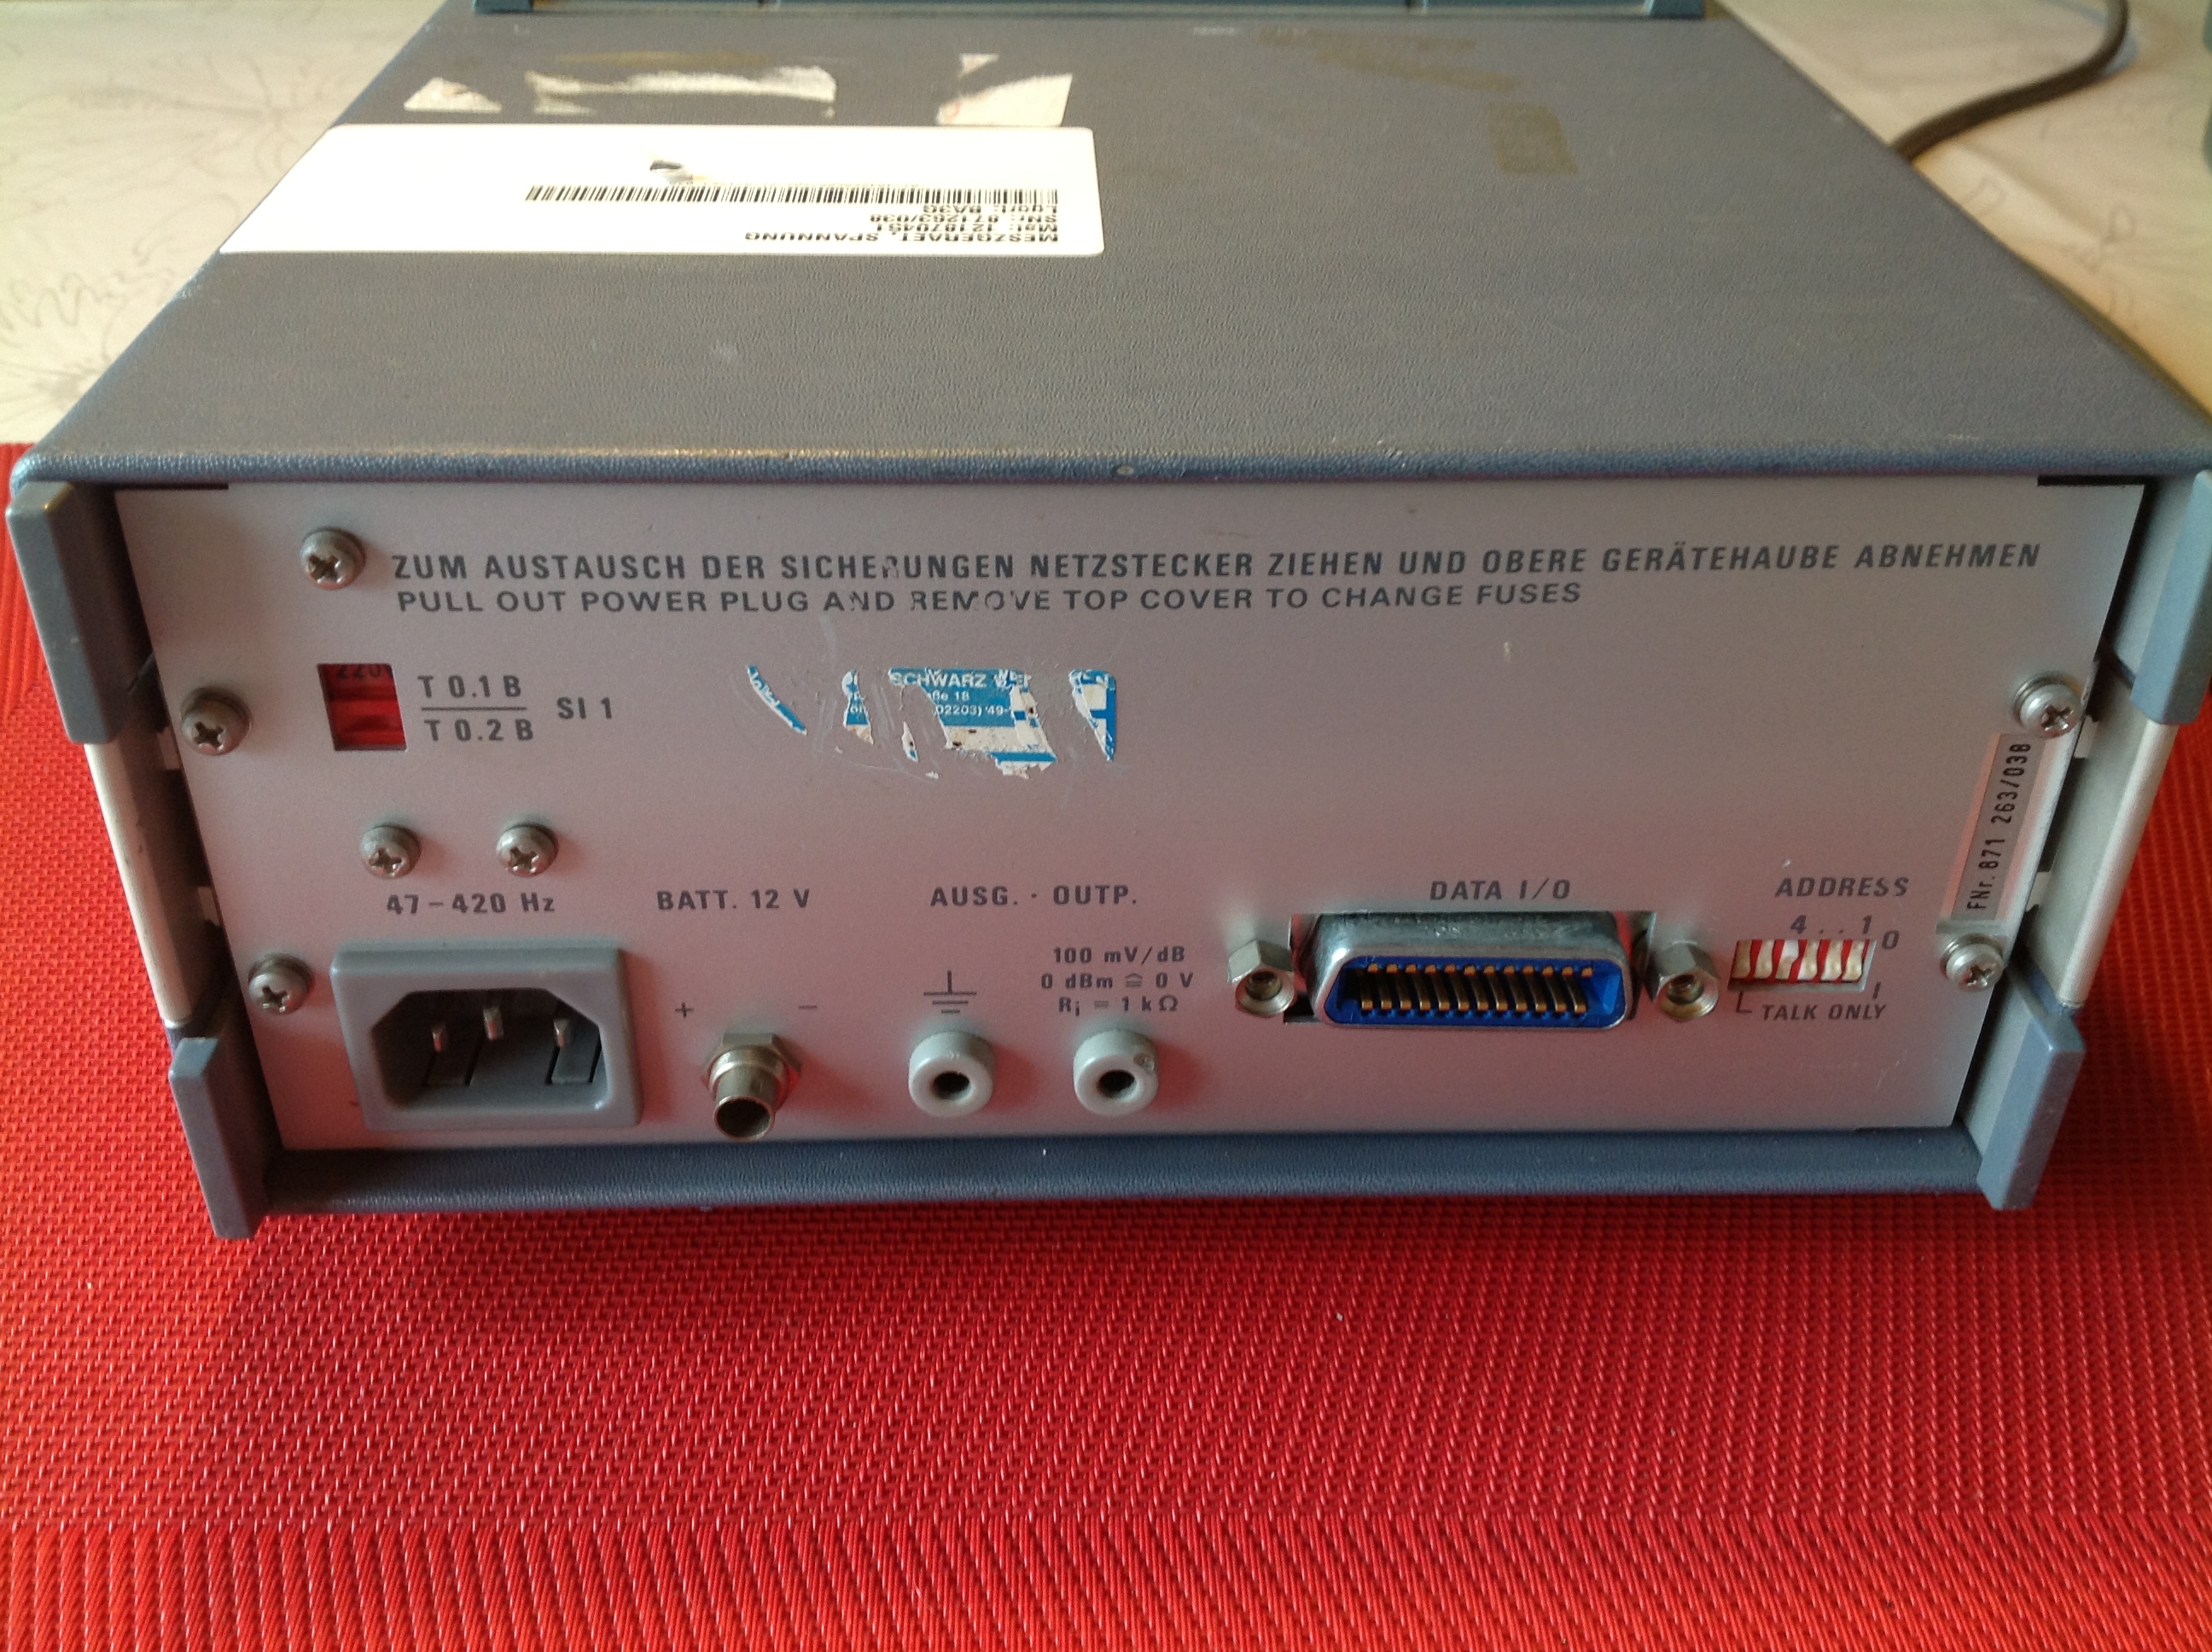 Rohde &amp; Schwarz Millivoltmeter 10 KHz....2 GHz URV 4